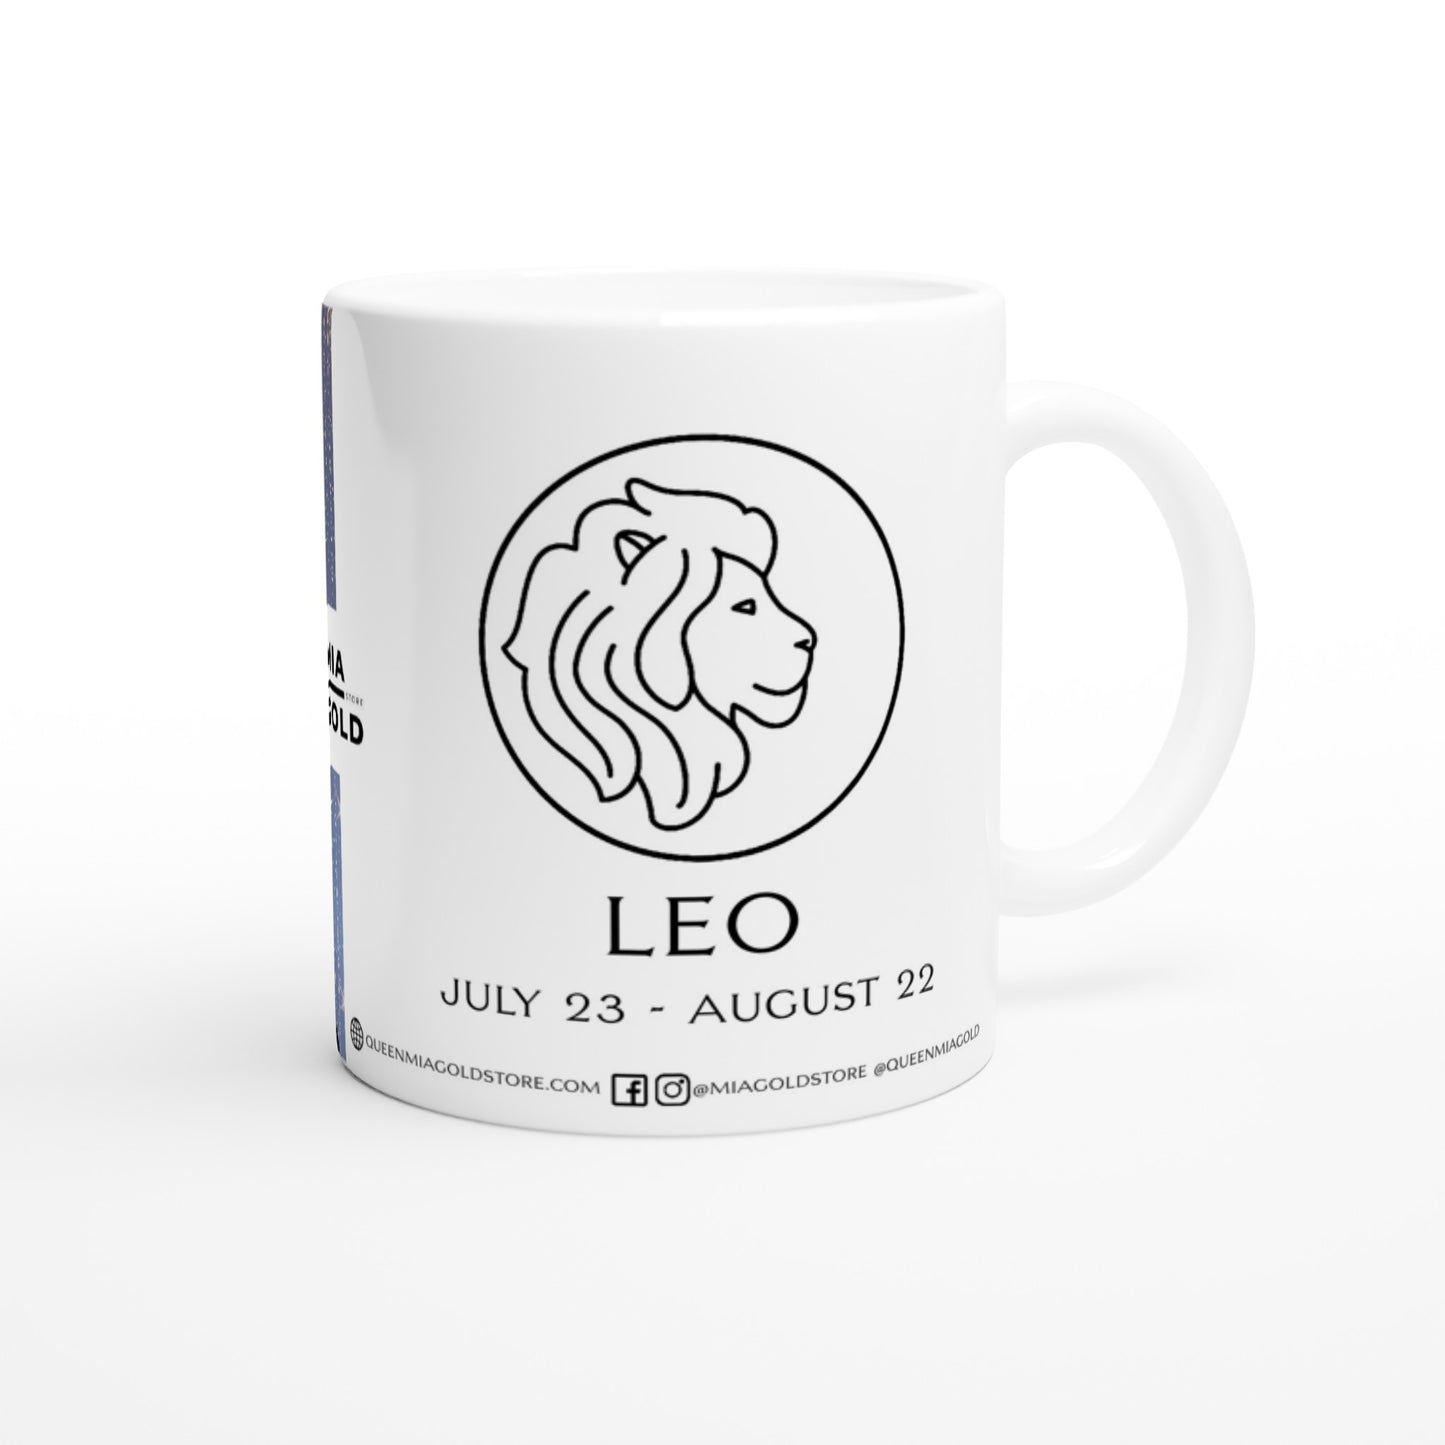 Leo - Ceramic Mug